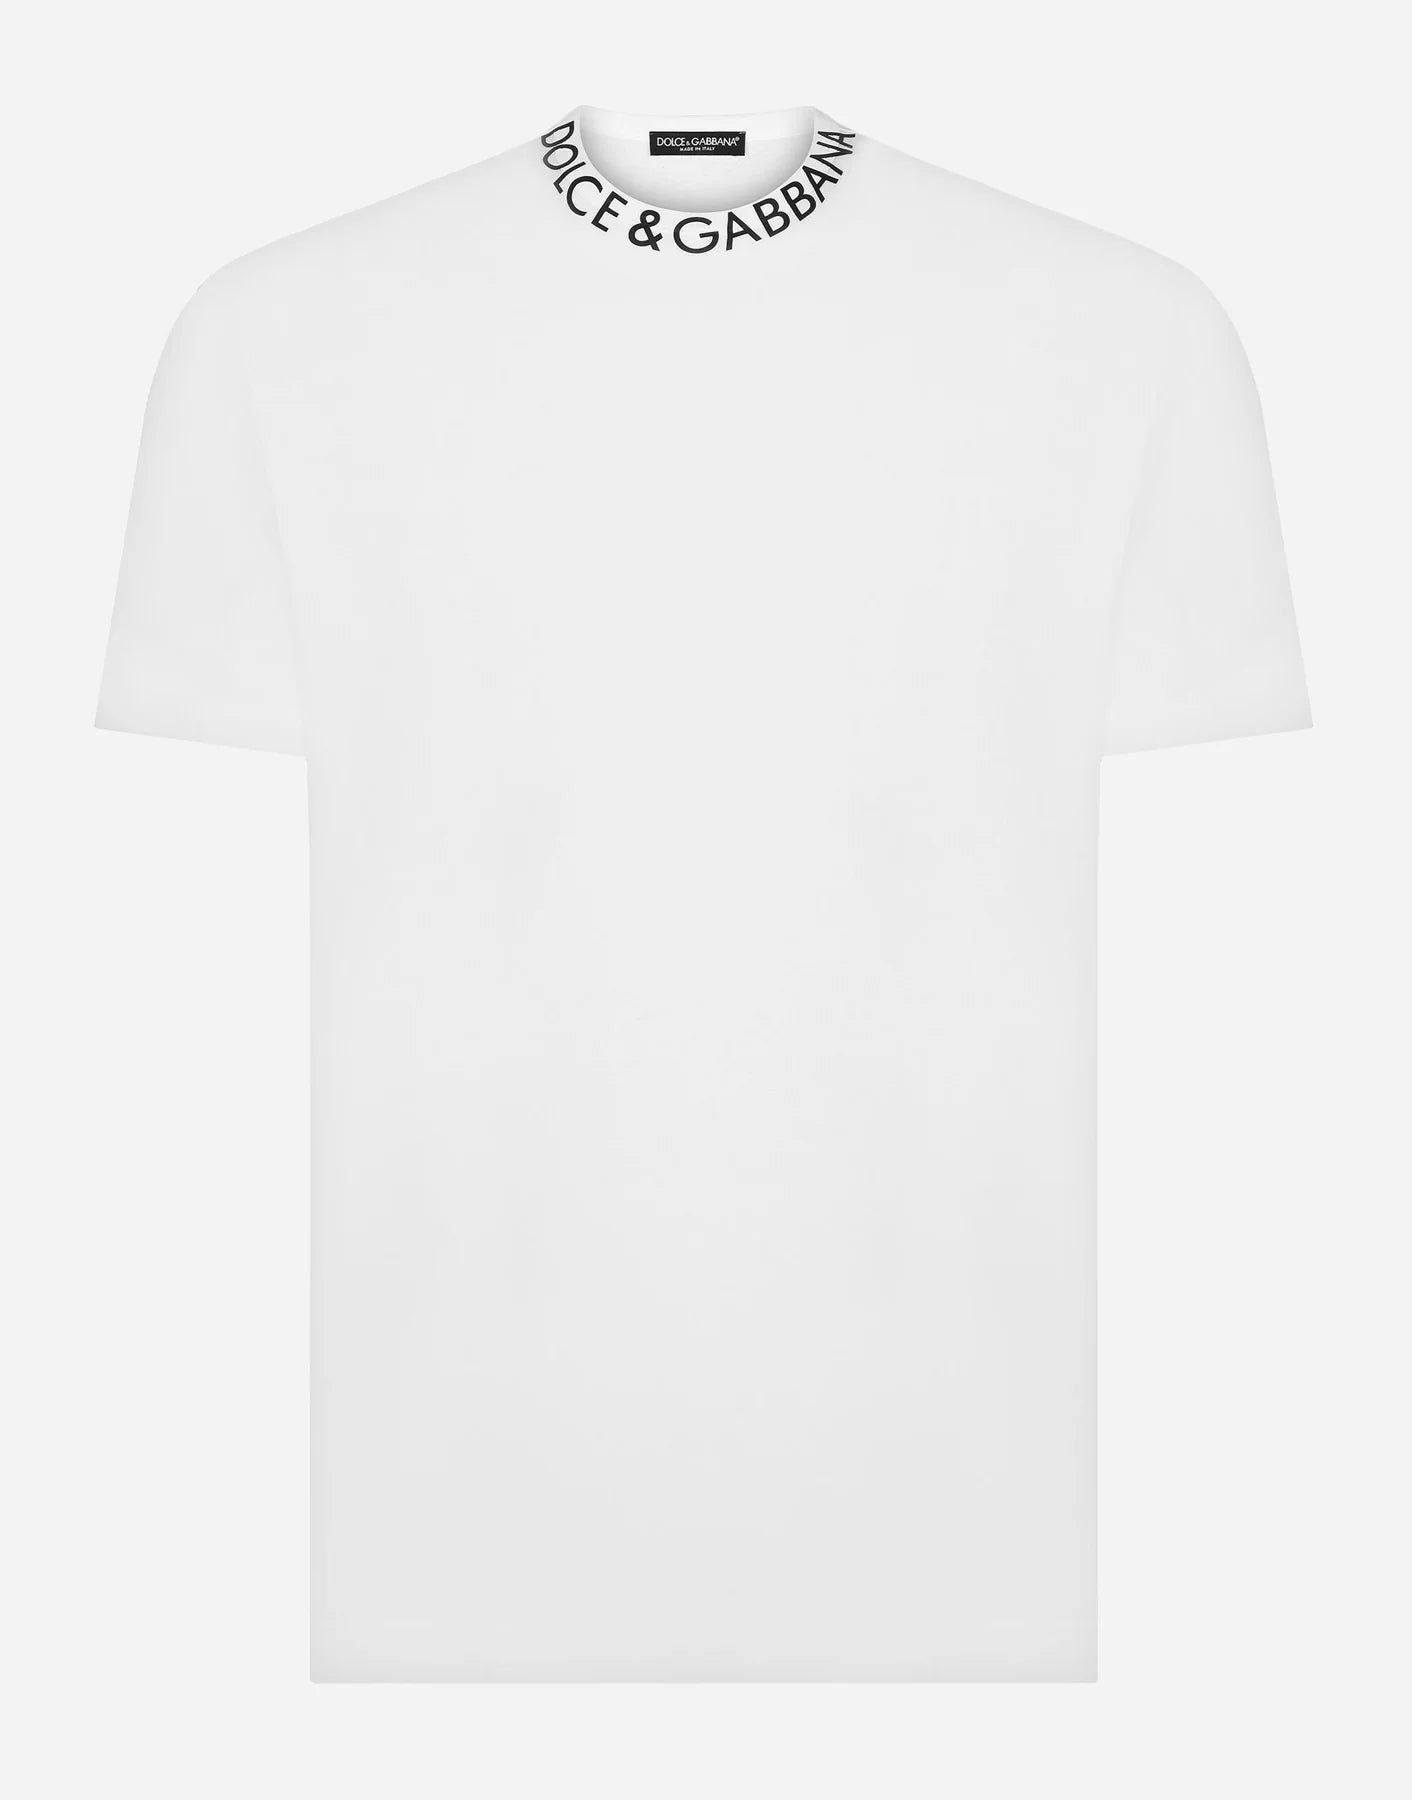 Dolce & Gabbanna T-shirt